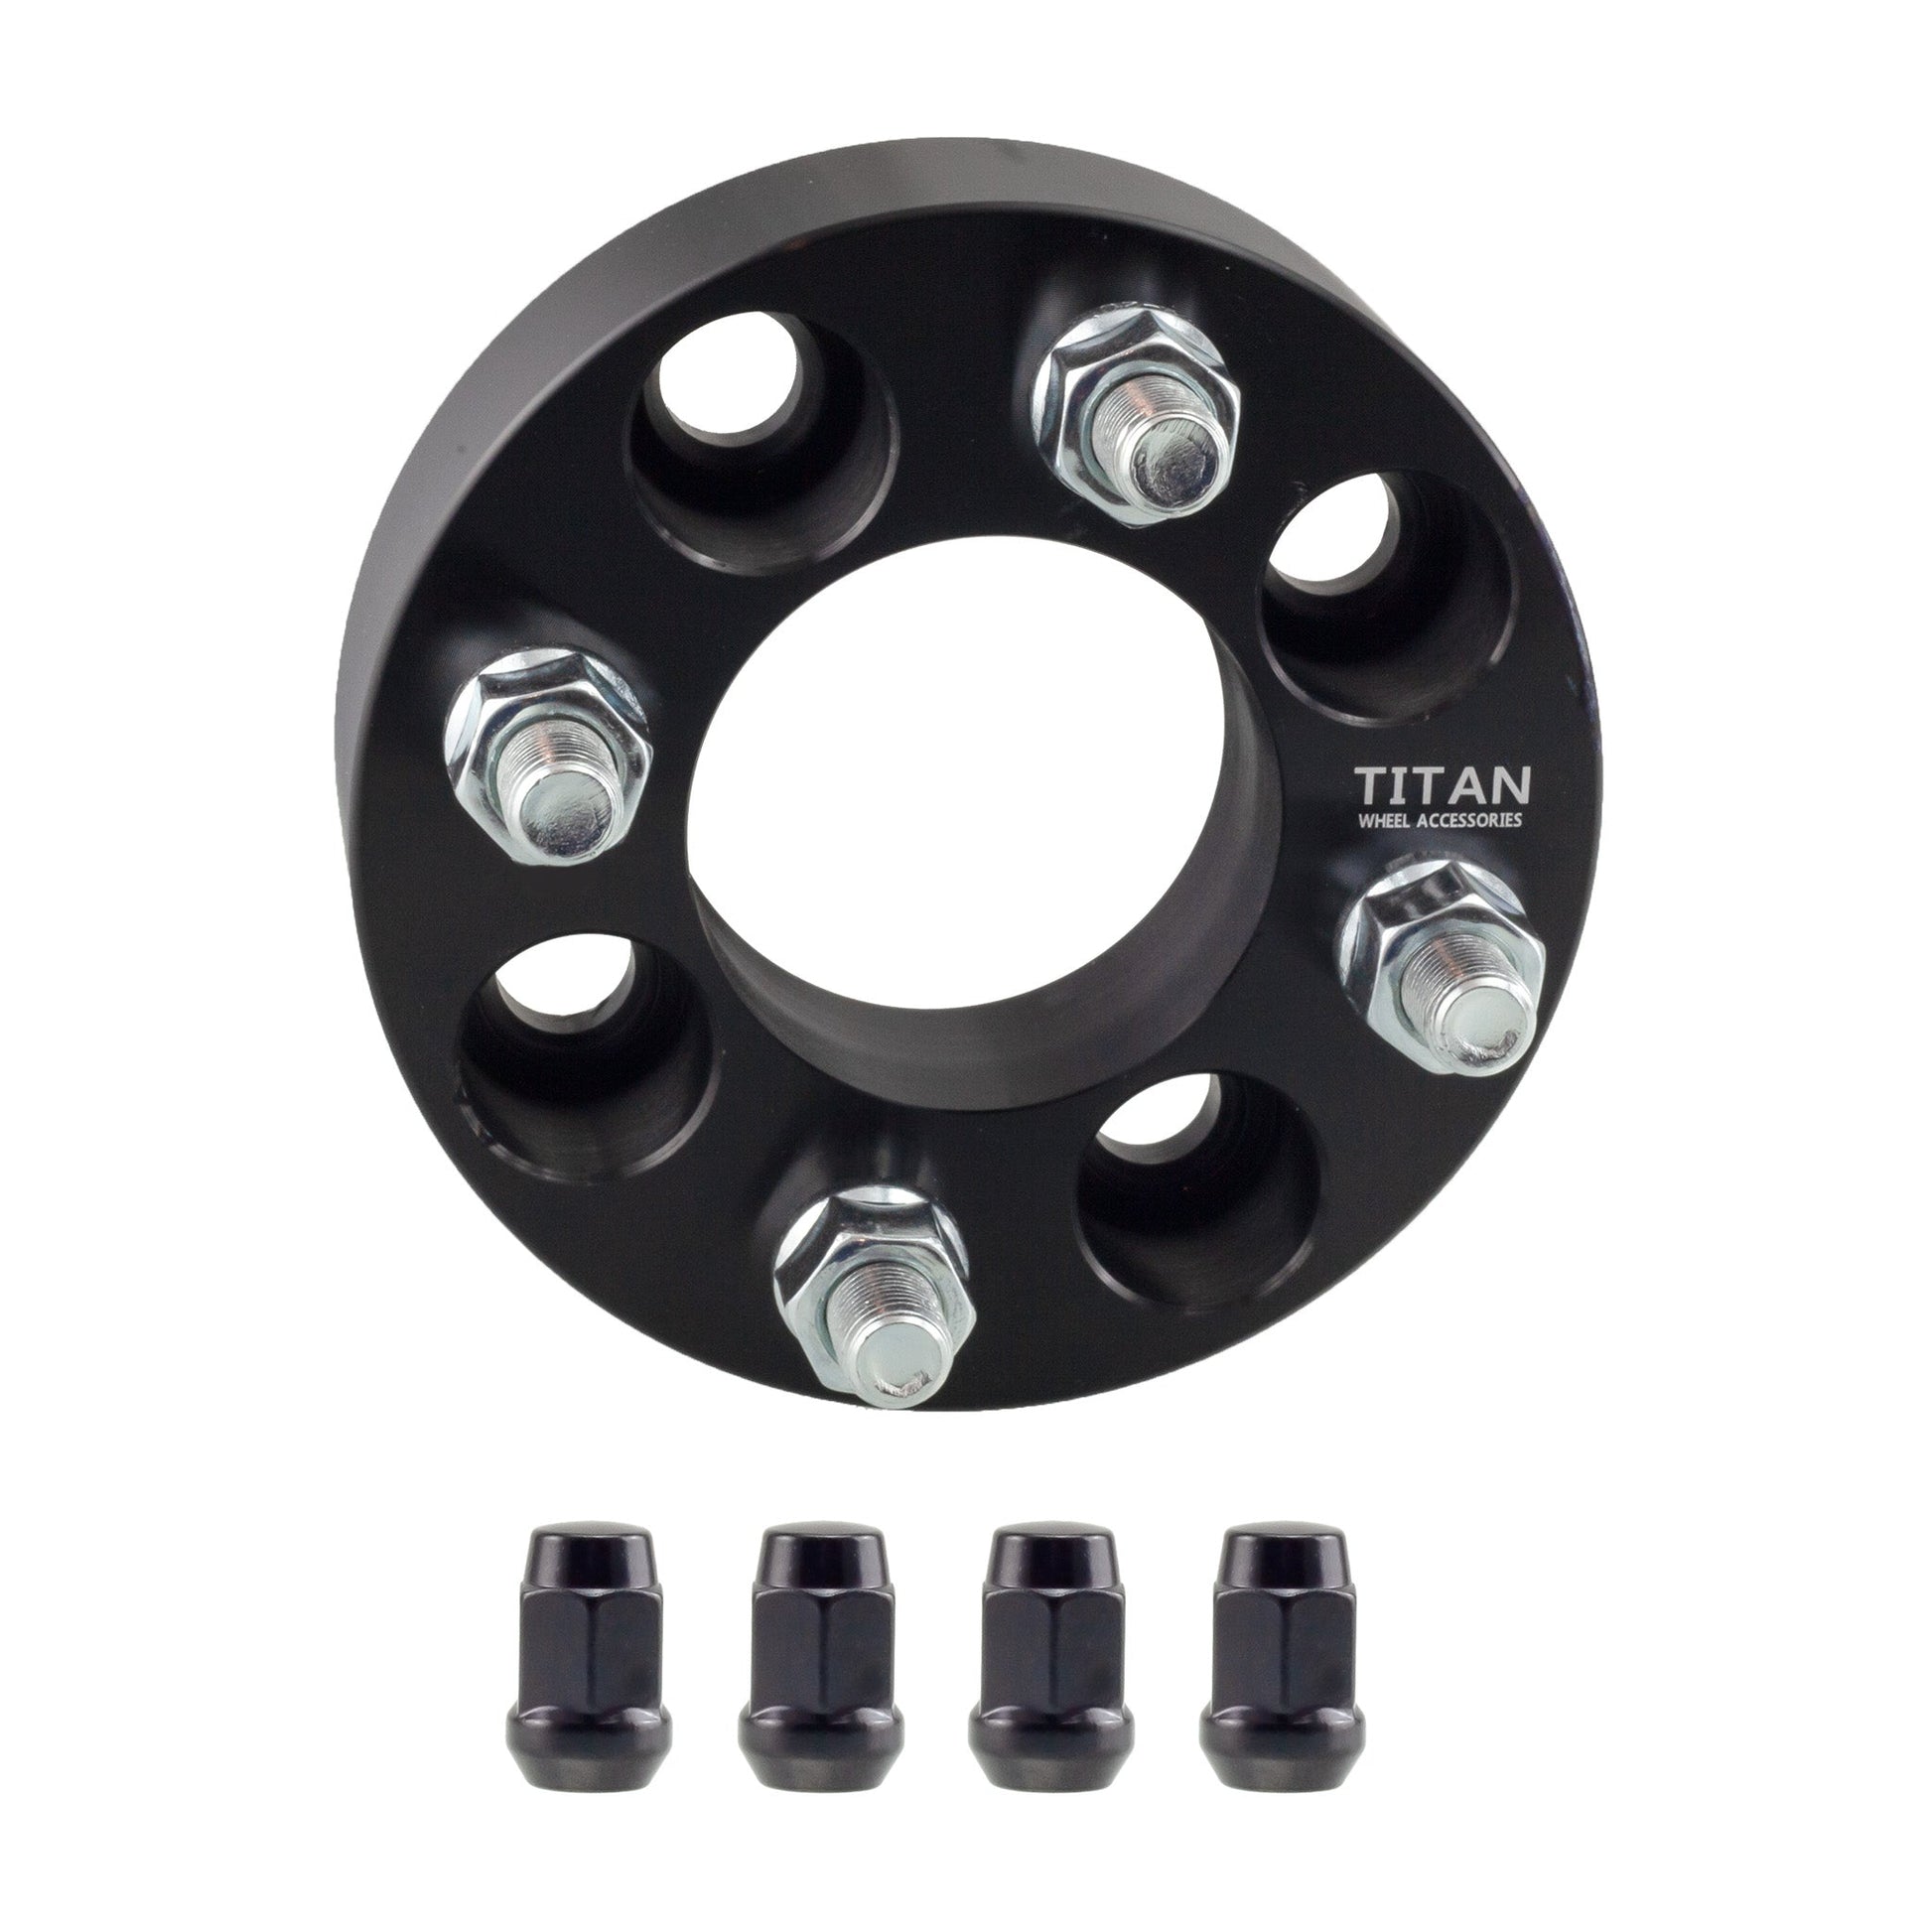 38mm (1.5") Titan Wheel Spacers for EZ GO Club Car Golf Carts | 4x4 | 1/2x20 Studs | Titan Wheel Accessories